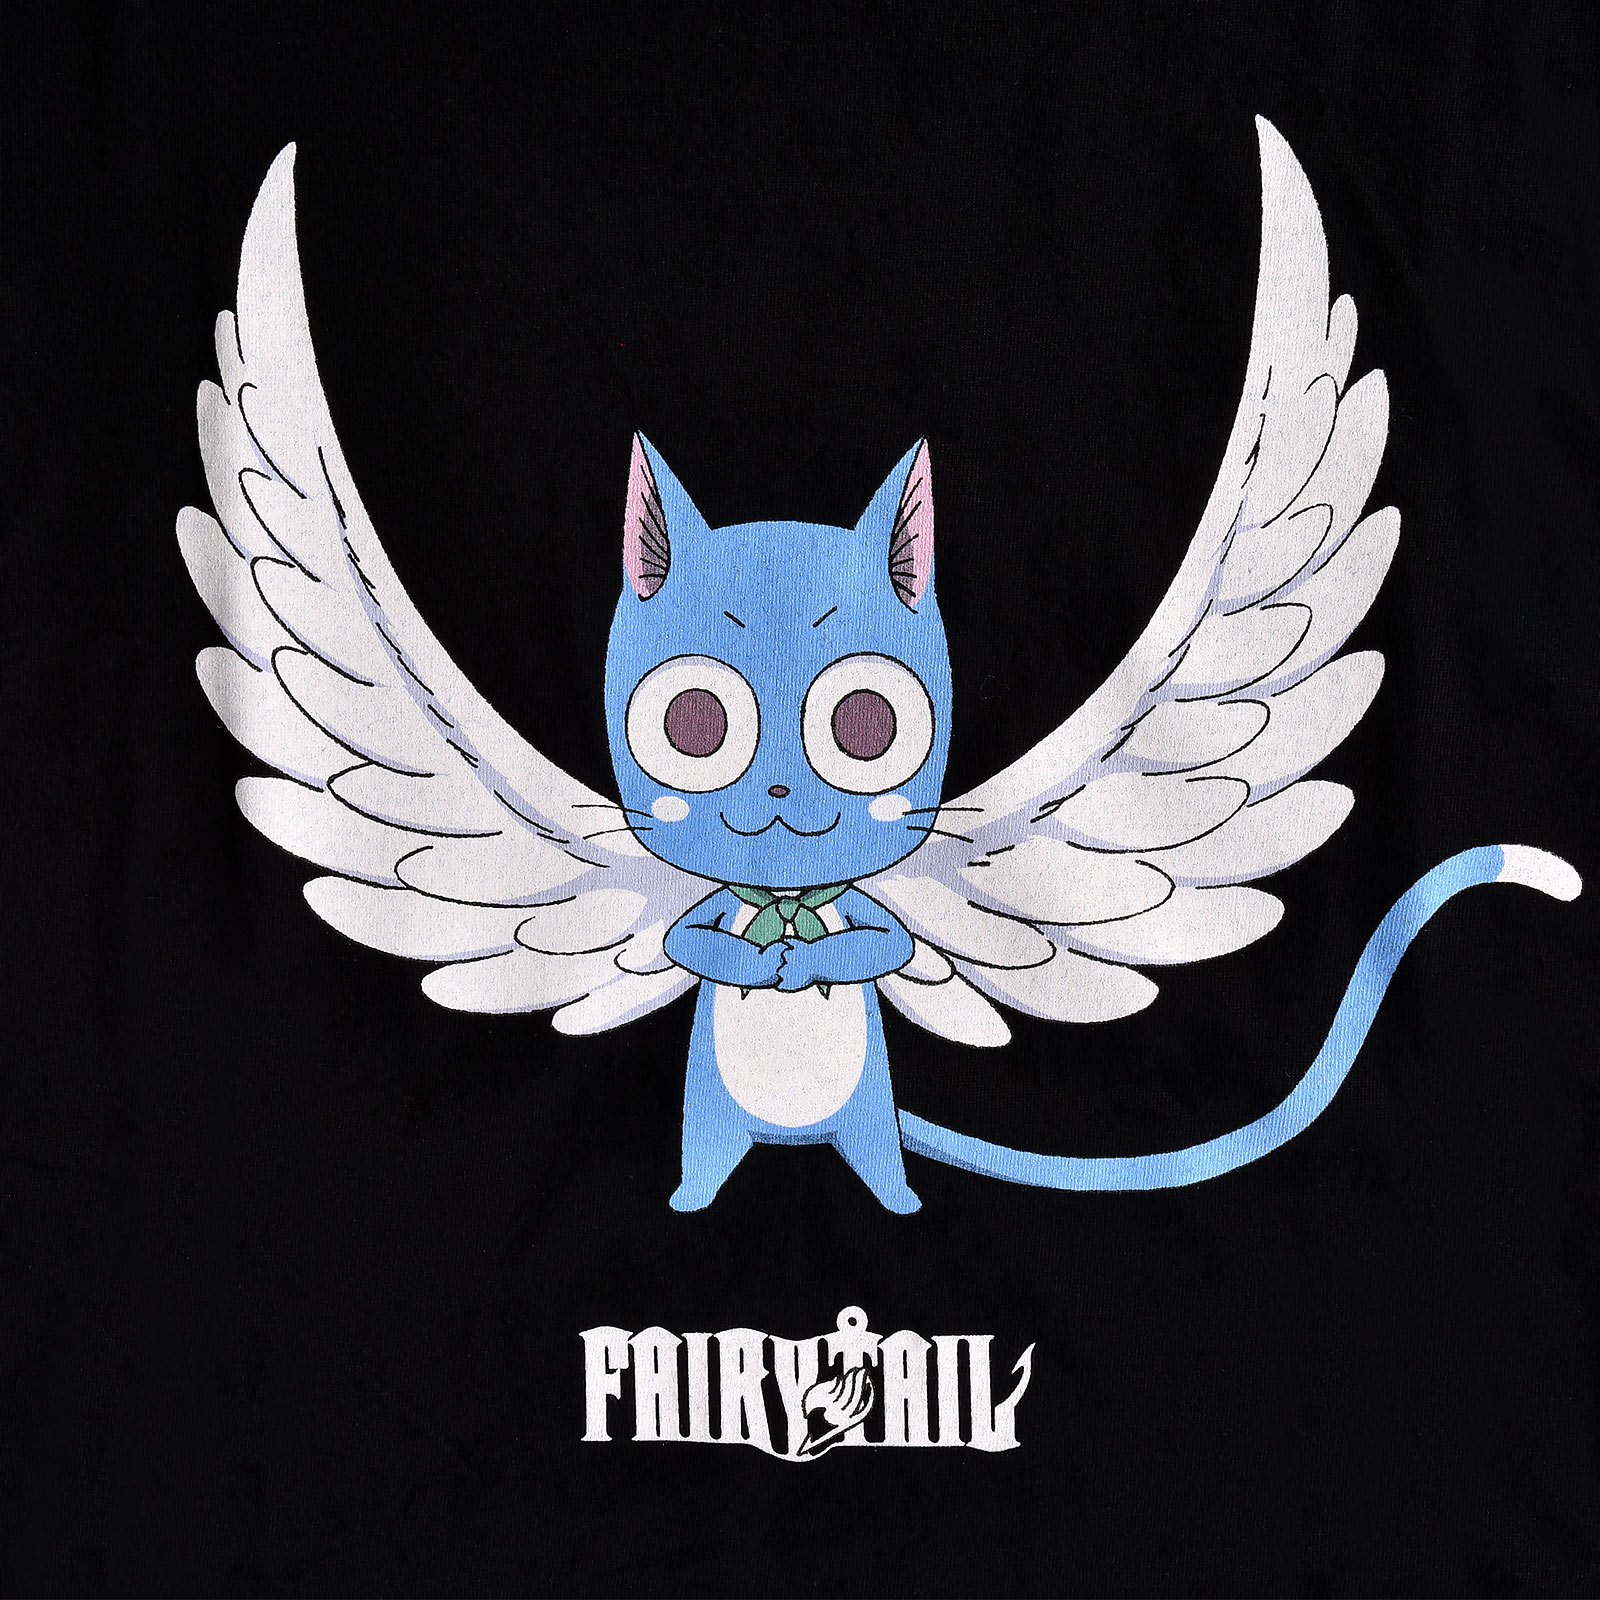 Fairy Tail - Happy Magic T-Shirt Damen schwarz